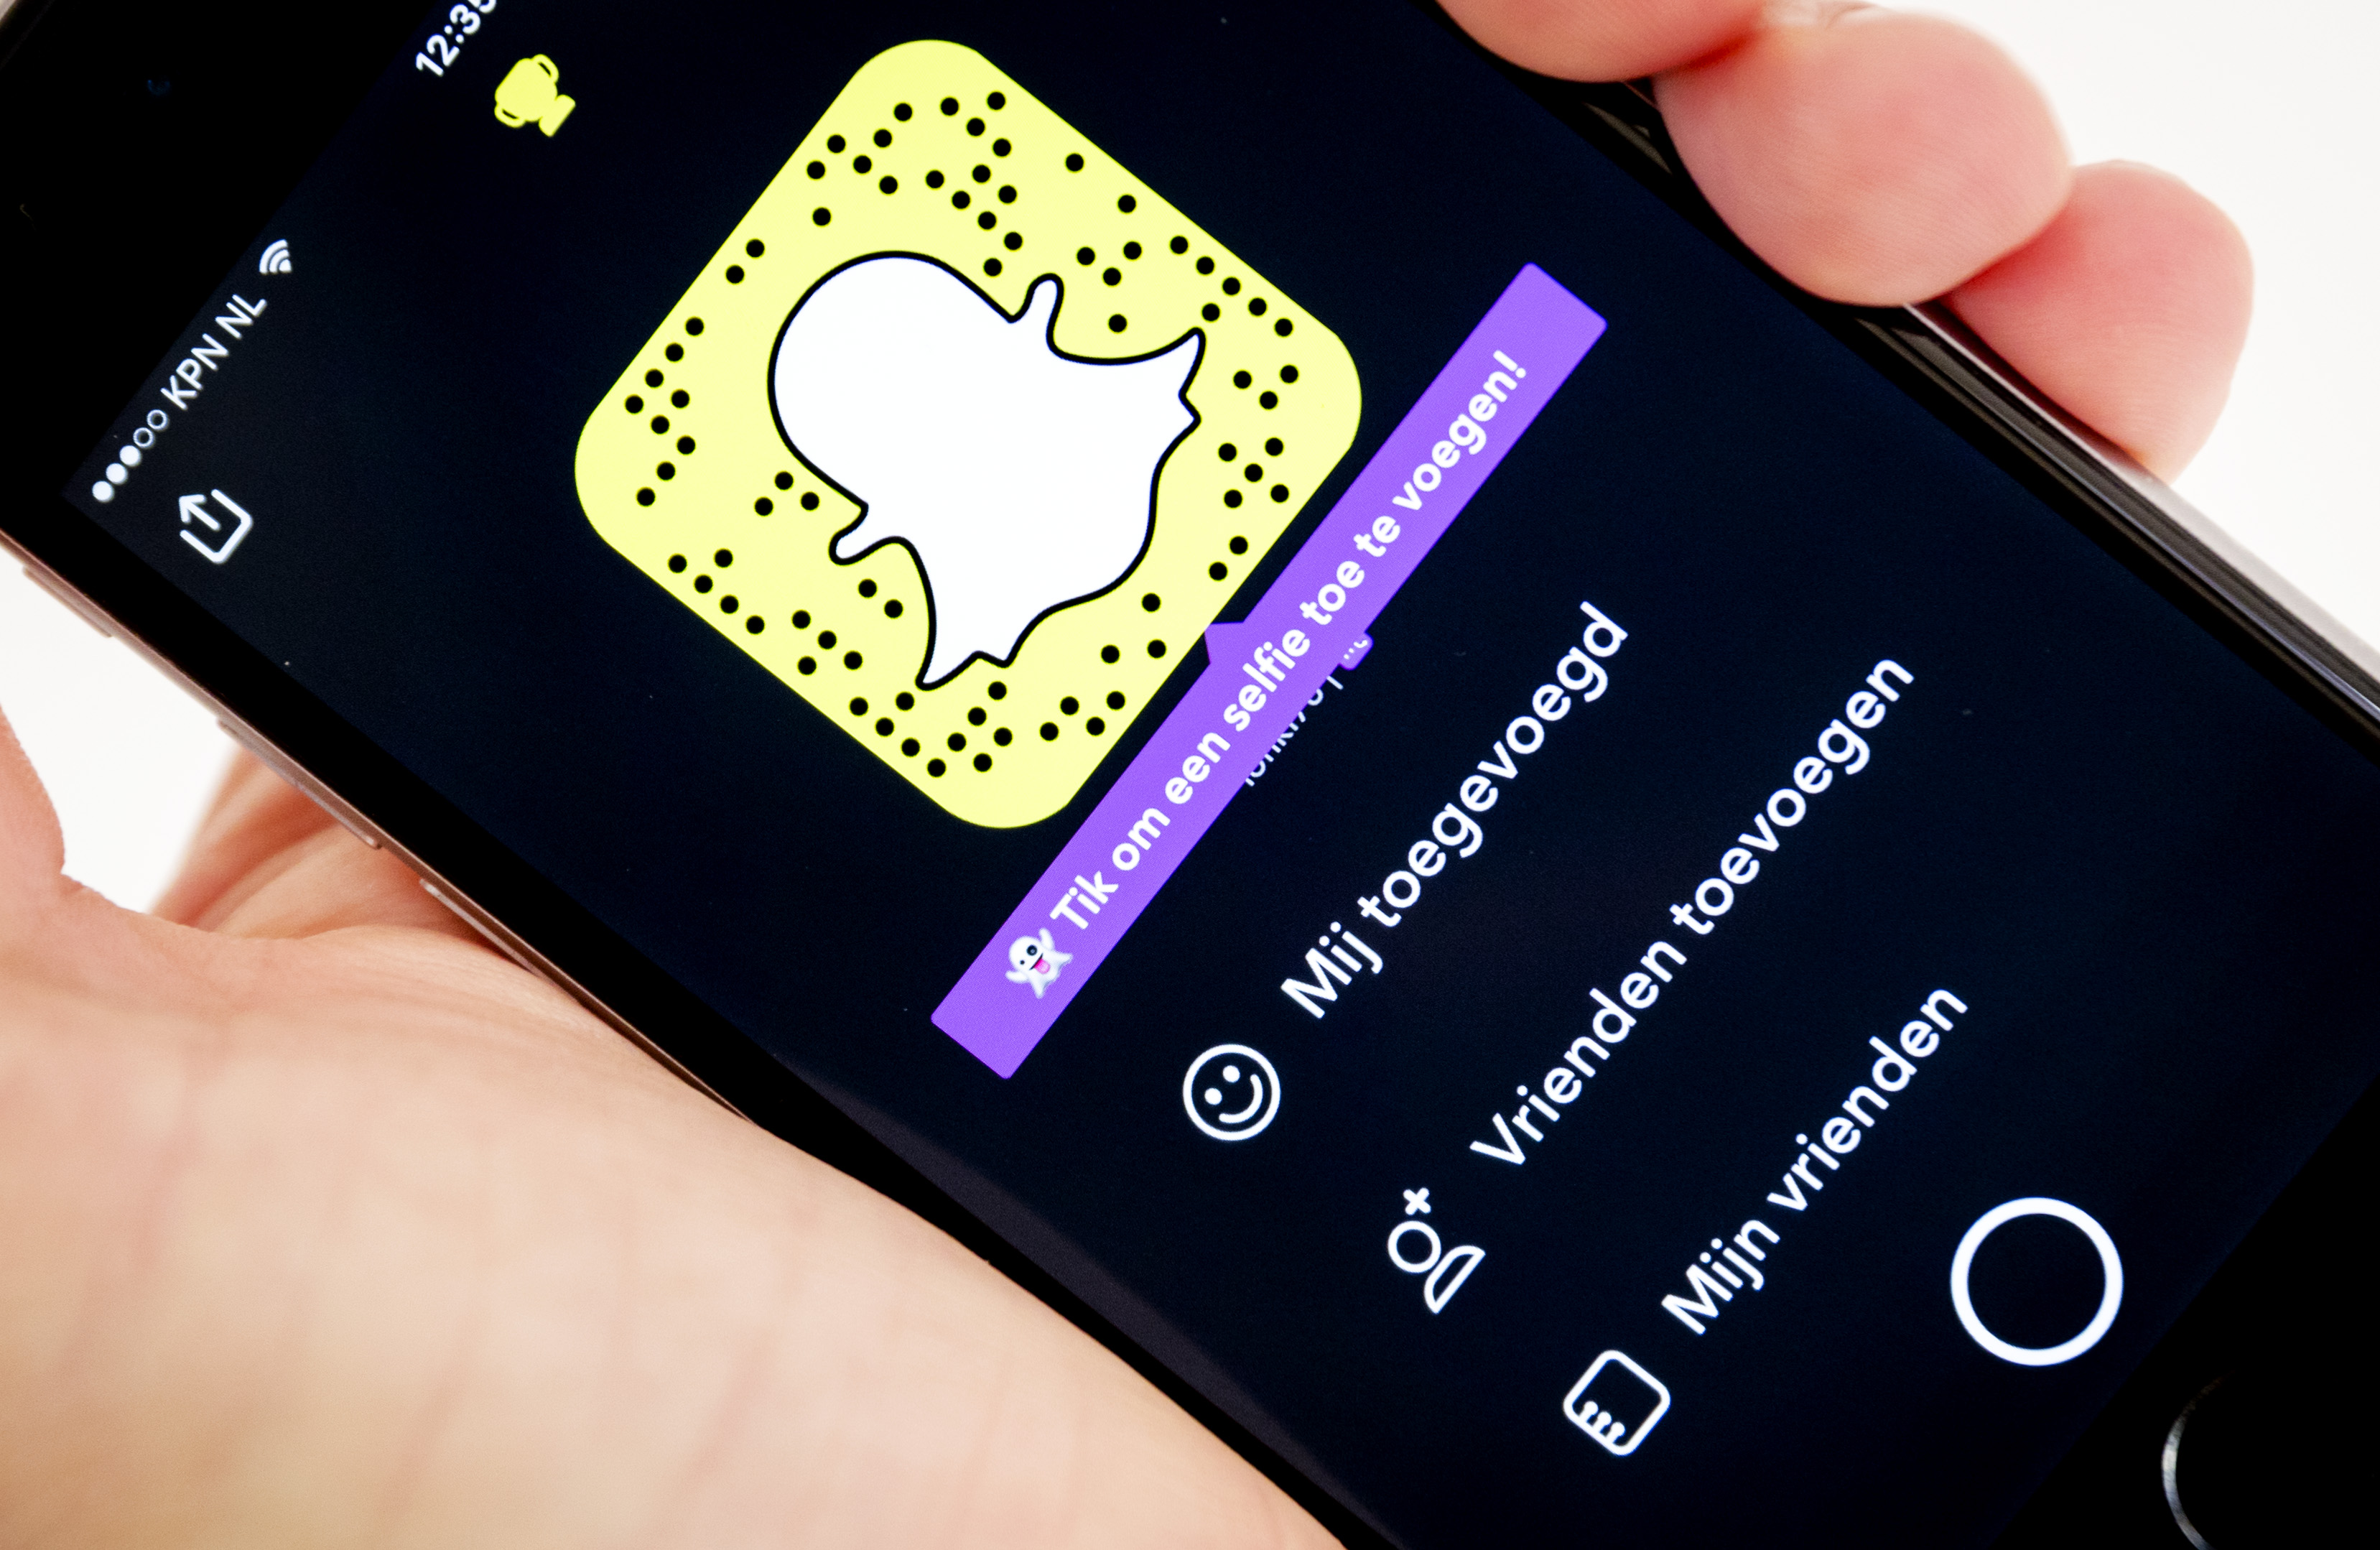 2016-11-16 13:34:30 AMSTERDAM - De app Snapchat op een mobiele telefoon. Snap Inc, het bedrijf achter Snapchat, heeft een aanvraag ingediend voor een beursnotering. ANP ROBIN VAN LONKHUIJSEN